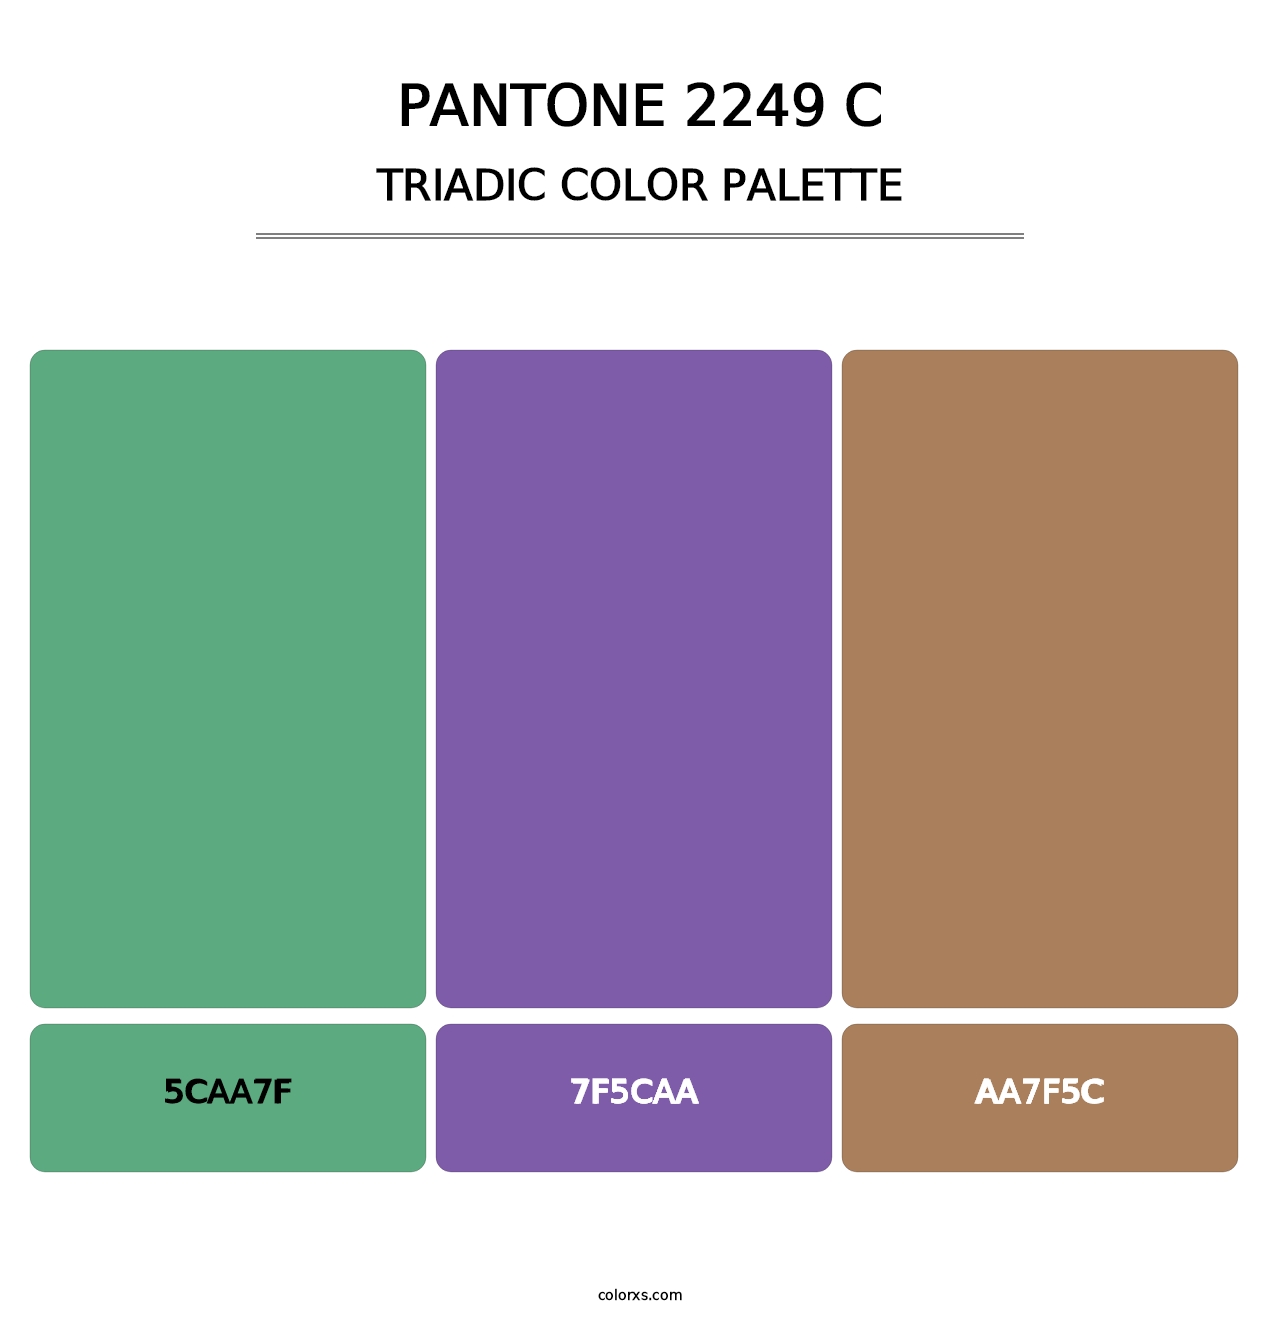 PANTONE 2249 C - Triadic Color Palette